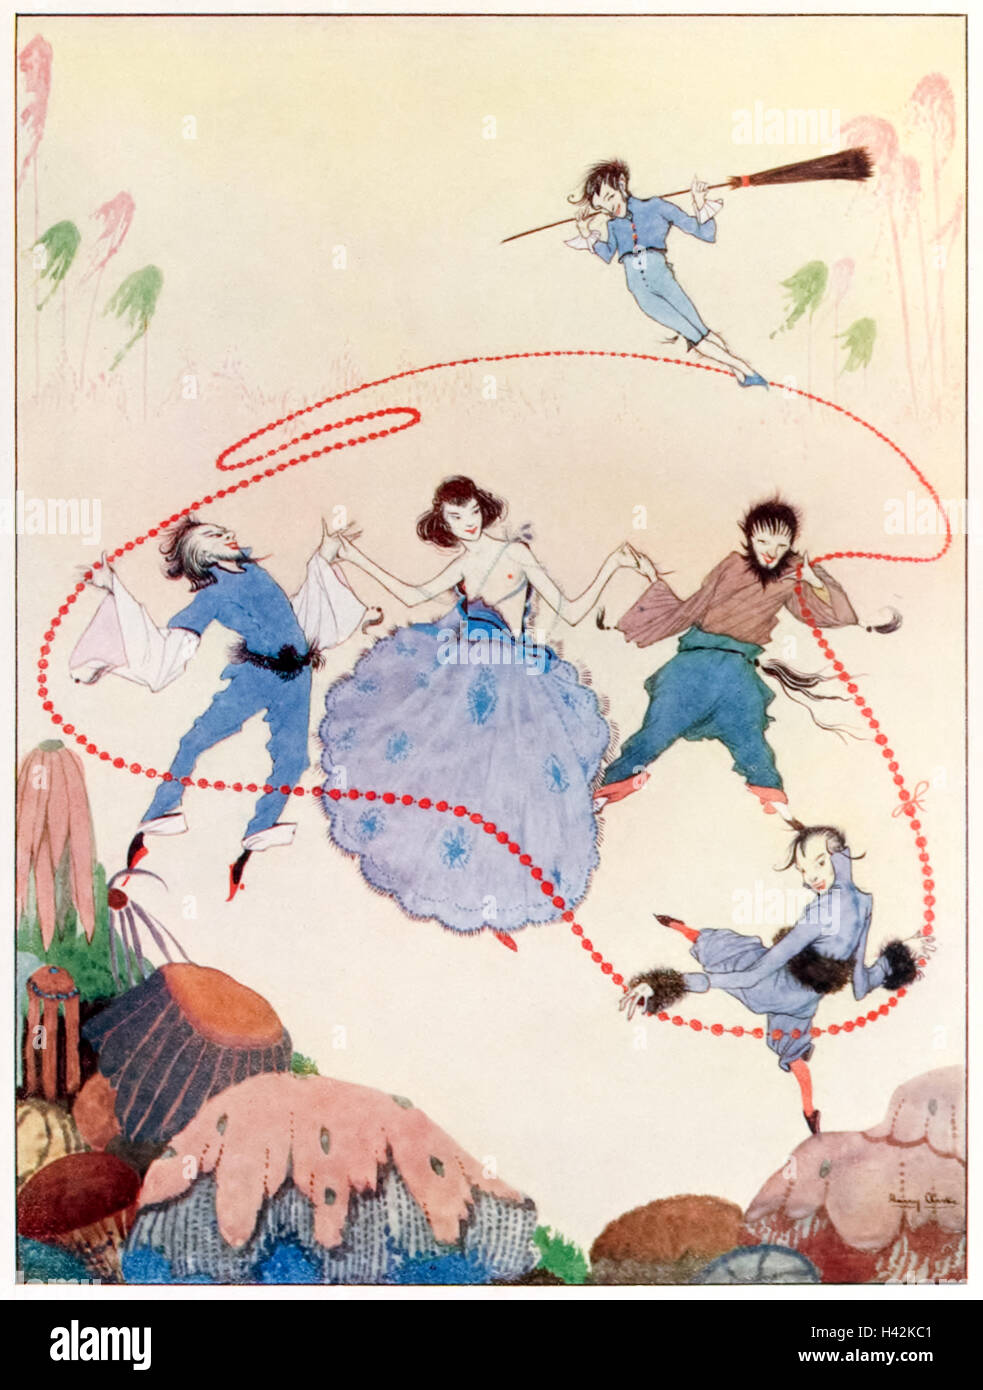 "sie werden die reiche Fairyland set alle tanzen vor Freude." Illustration von Harry Clarke (1889-1931) für das Gedicht "Almosen im Herbst" von Rose Fyleman (1877-1957). Siehe Beschreibung für mehr Informationen. Stockfoto